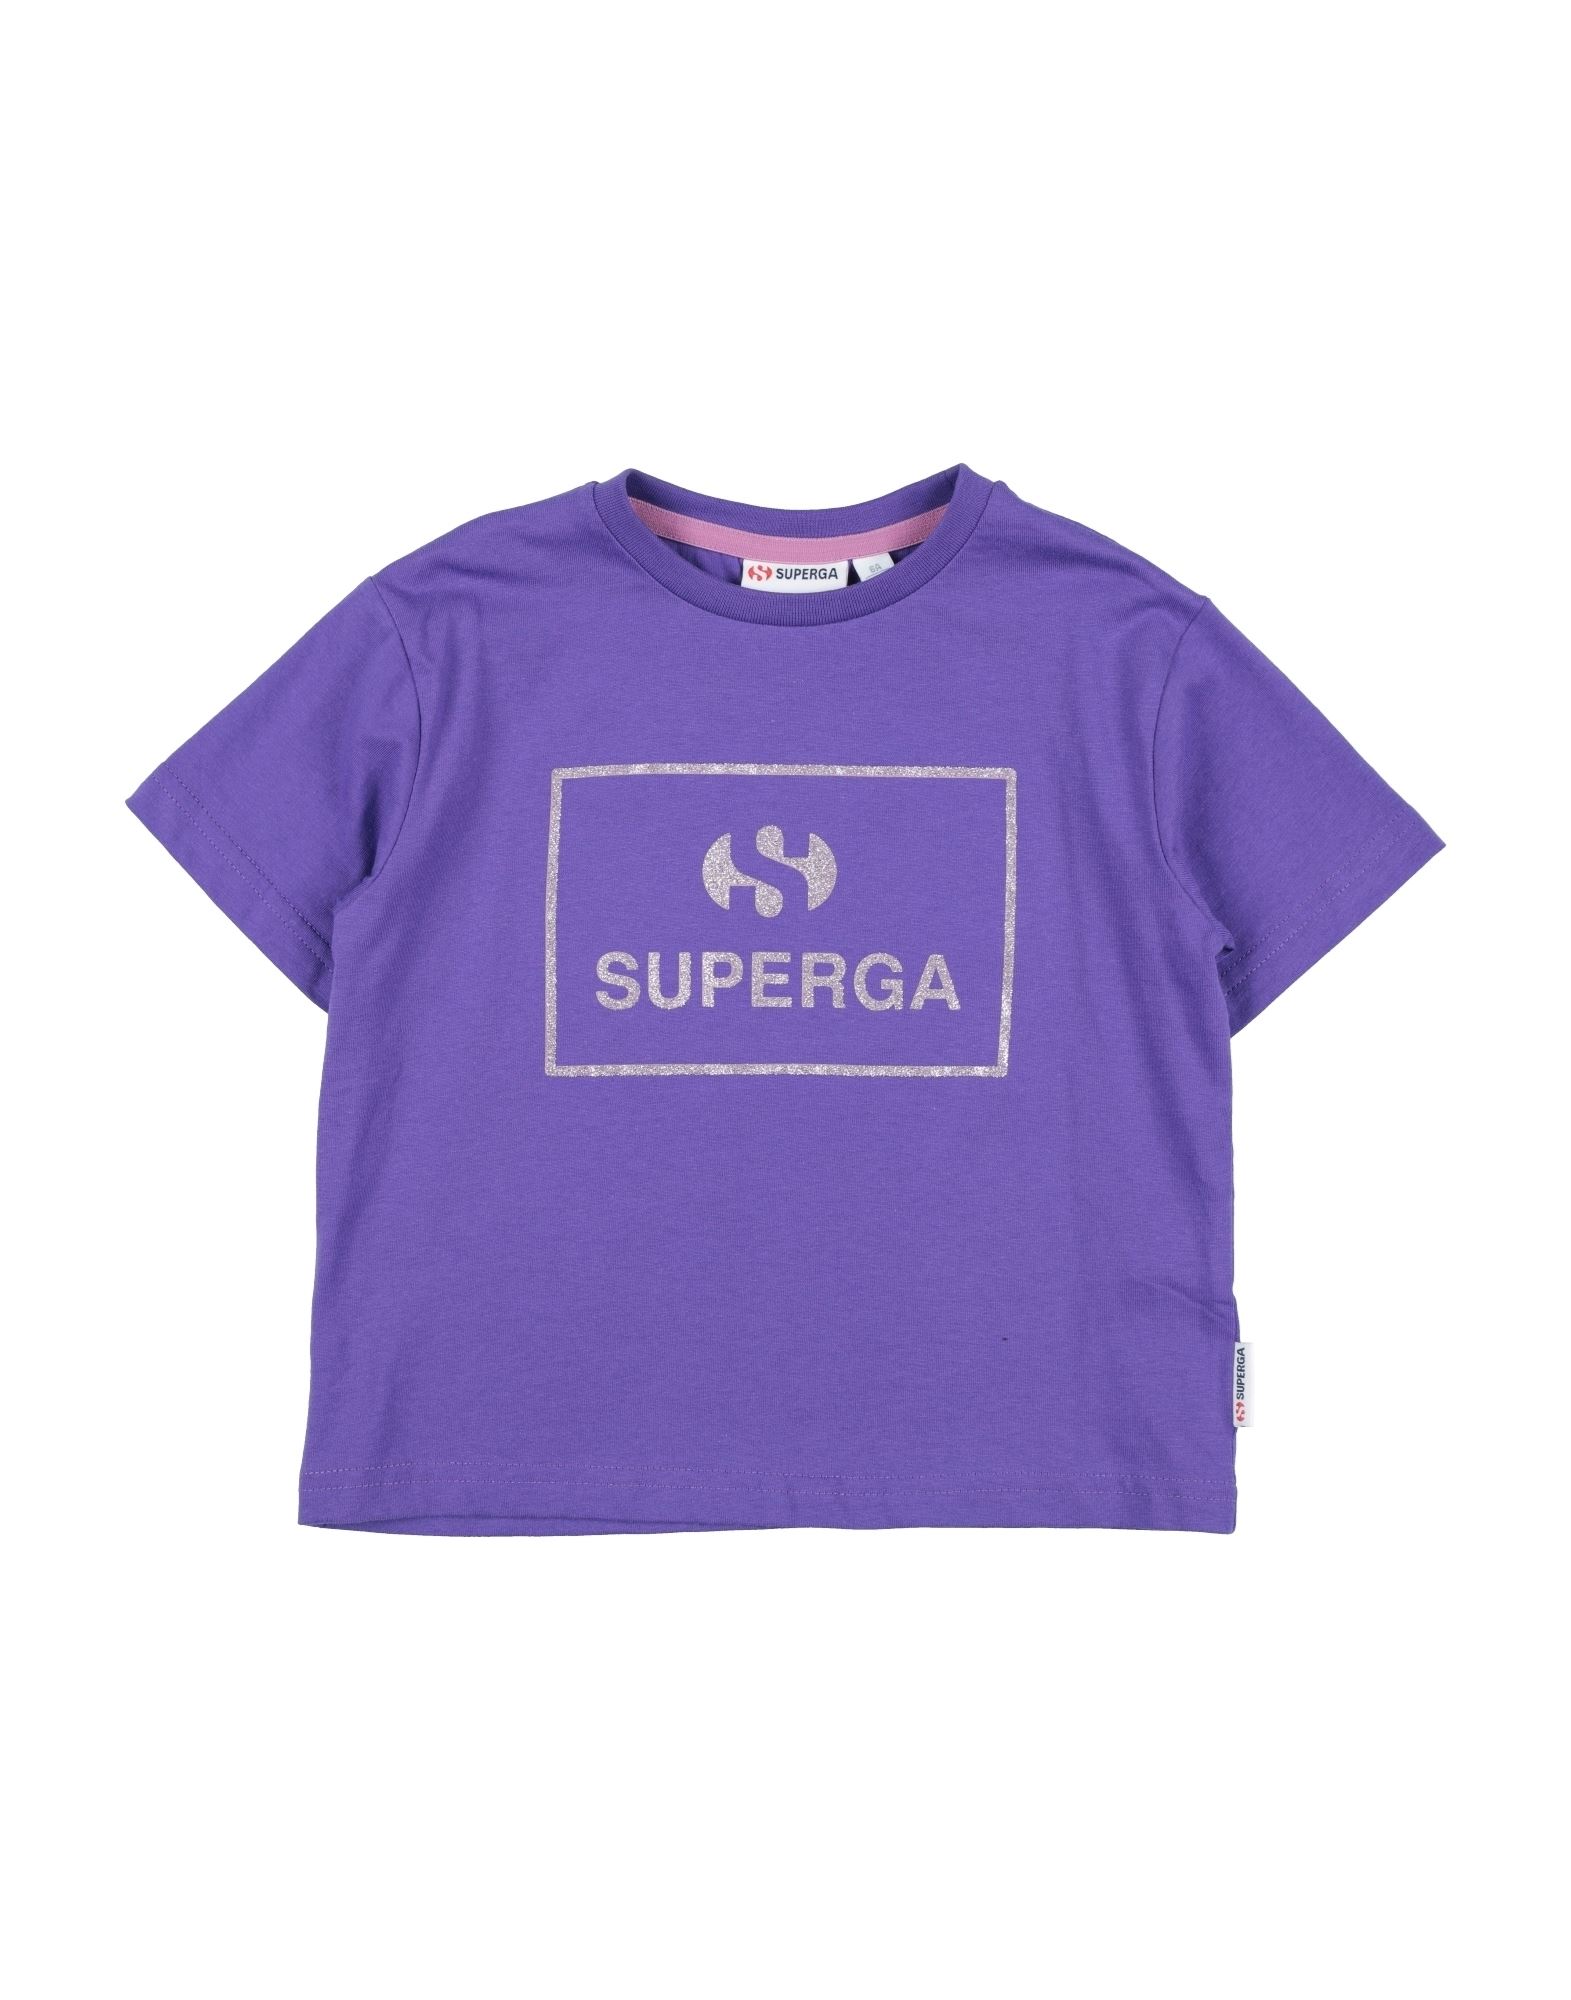 SUPERGA T-shirts Kinder Violett von SUPERGA